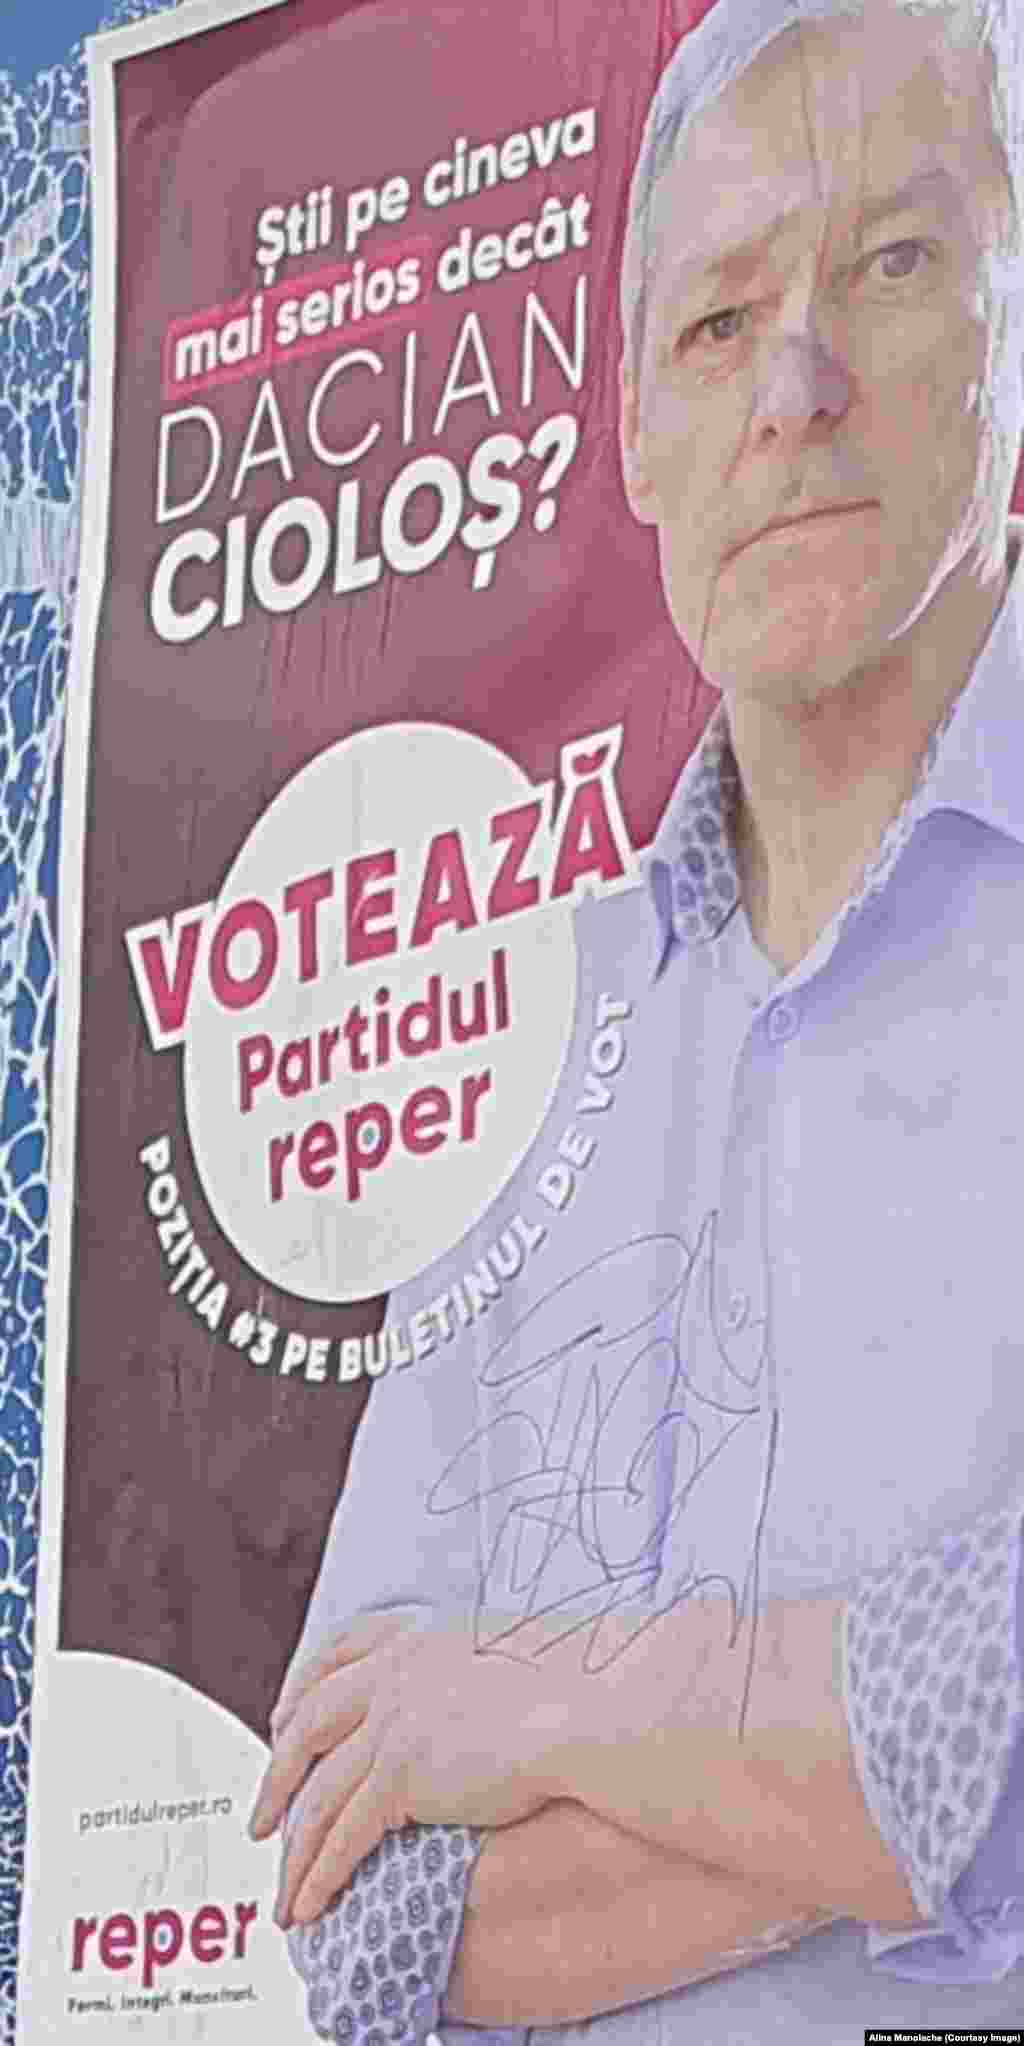 Dacian Cioloș, fondator REPER, îndeamnă alegătorii să voteze candidații acestui partid și se întreabă: &bdquo;Știi pe cineva mai serios decât Dacian Cioloș?&rdquo;.